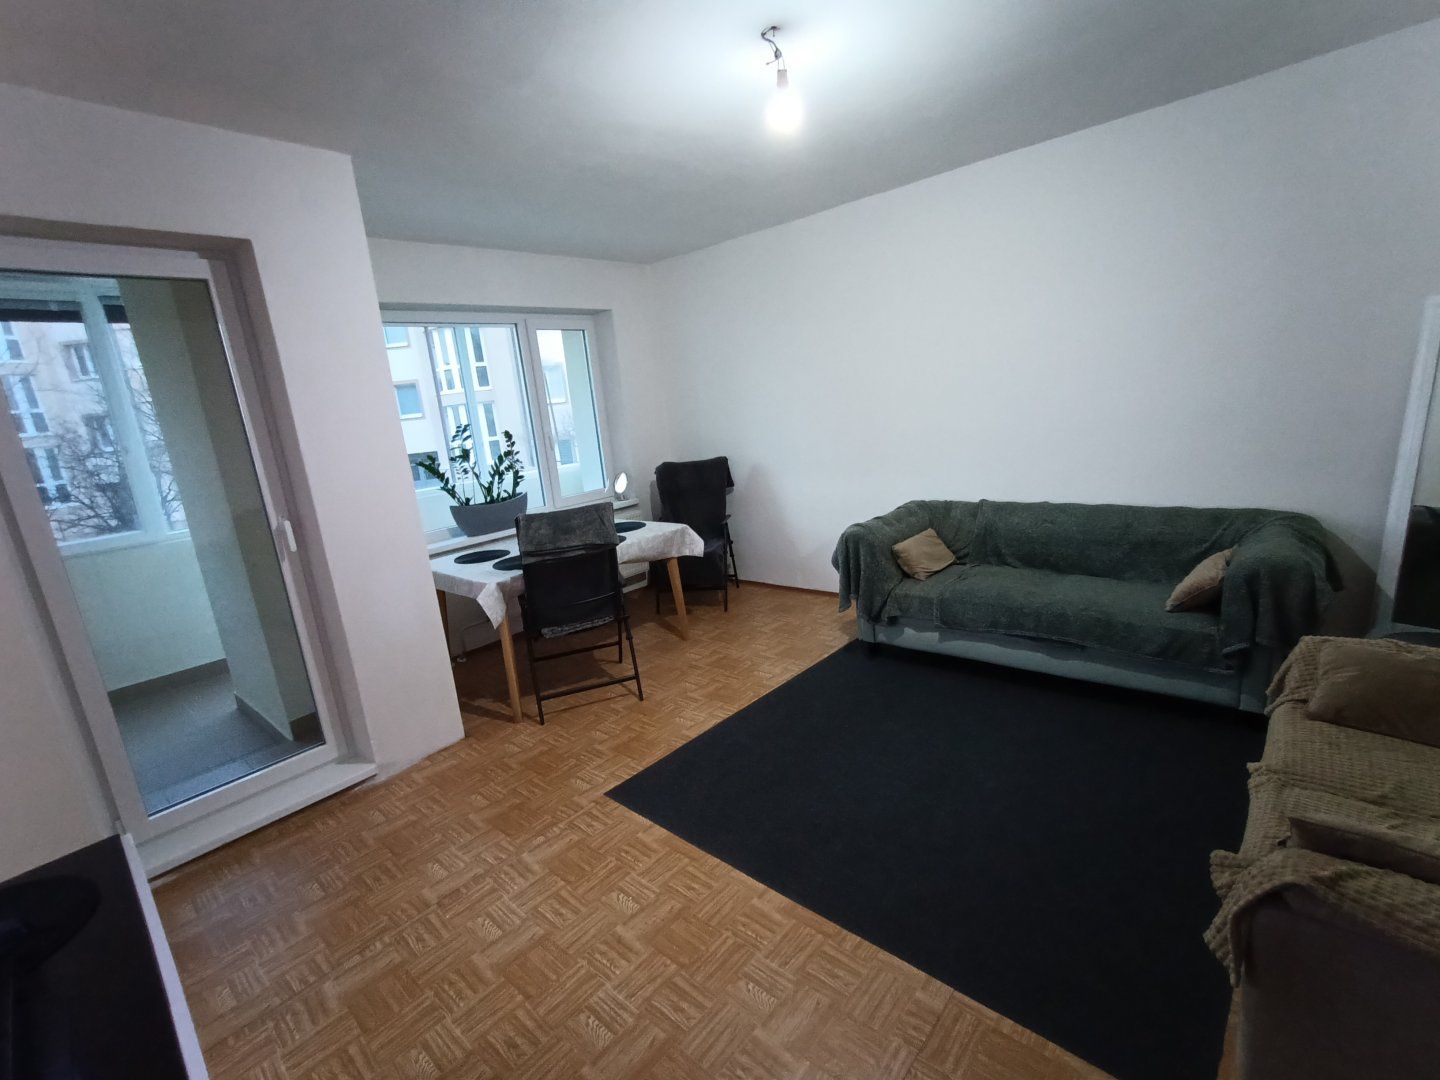 Na predaj veľkometrážny 4 izbový bezbariérový byt Nitra - Jelenecká s 30 m2 úložným priestorom